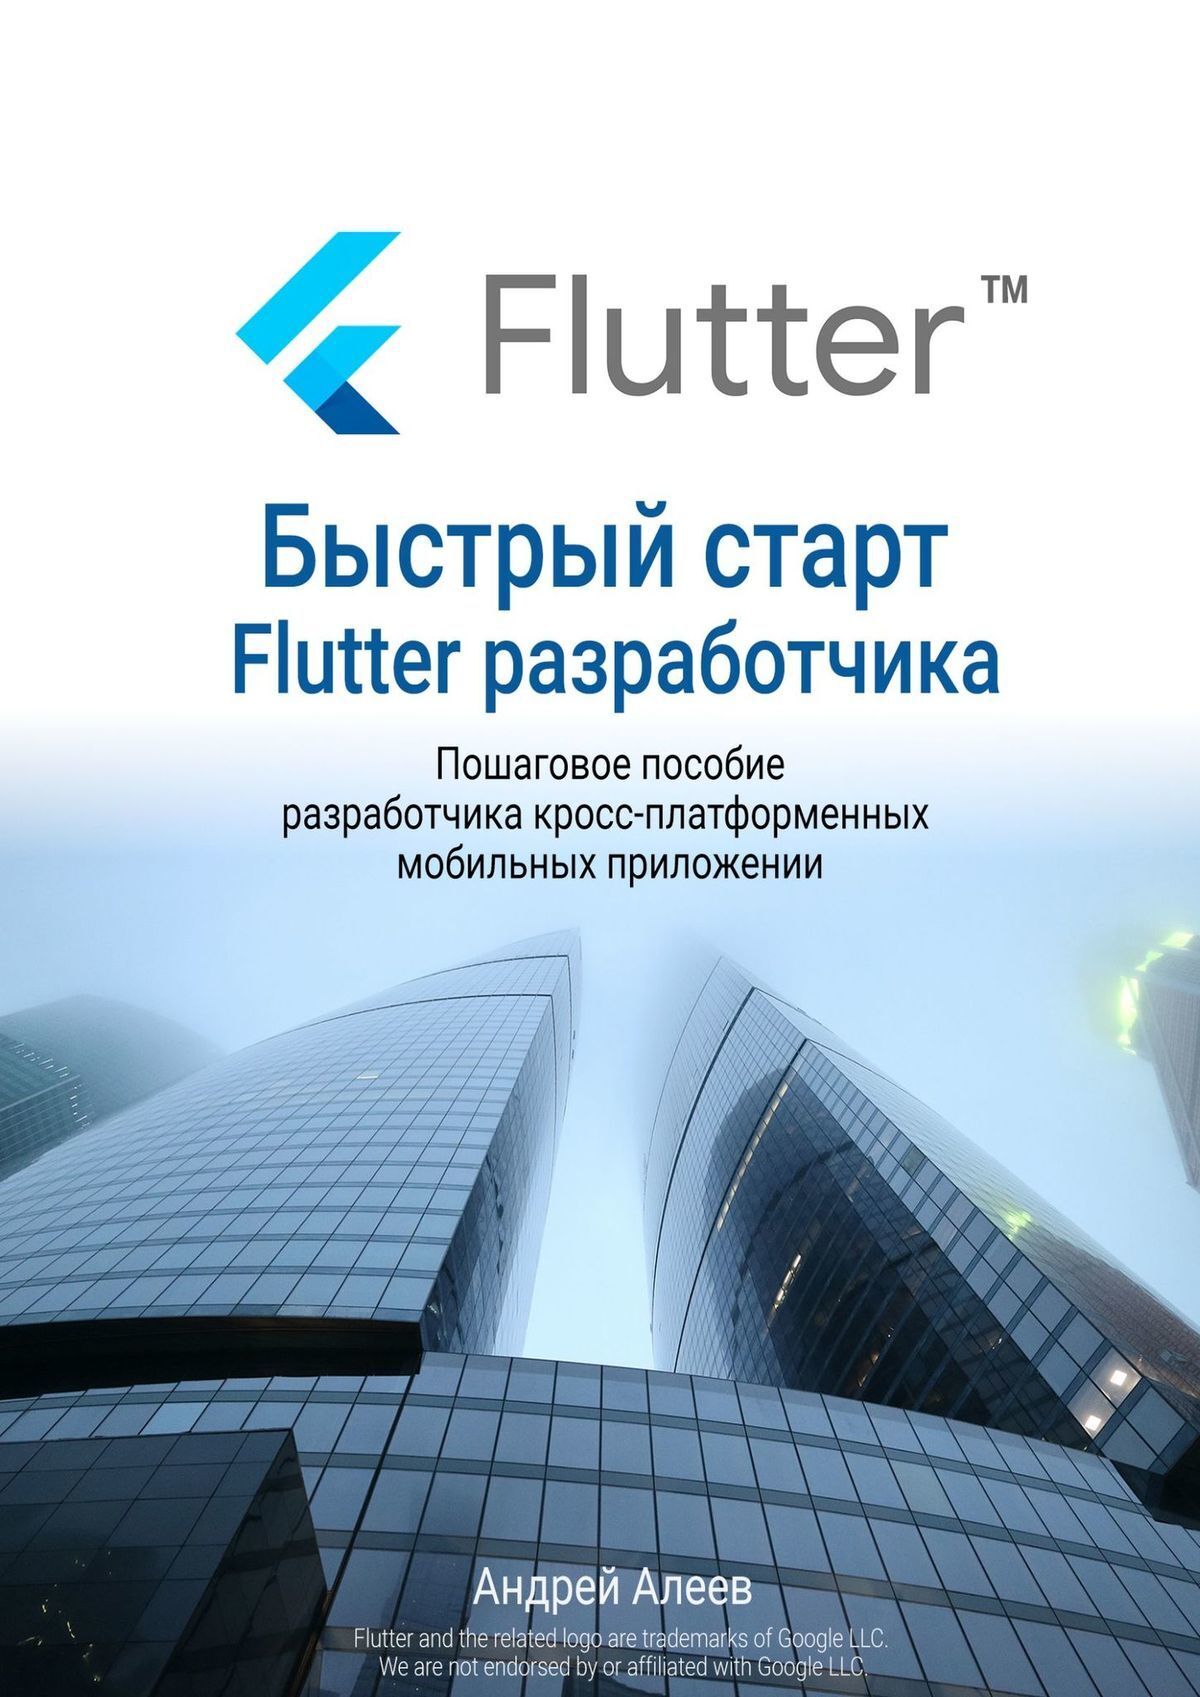 Книга Быстрый старт Flutter-разработчика из серии , созданная Андрей Алеев, может относится к жанру Компьютеры: прочее. Стоимость электронной книги Быстрый старт Flutter-разработчика с идентификатором 48781701 составляет 490.00 руб.